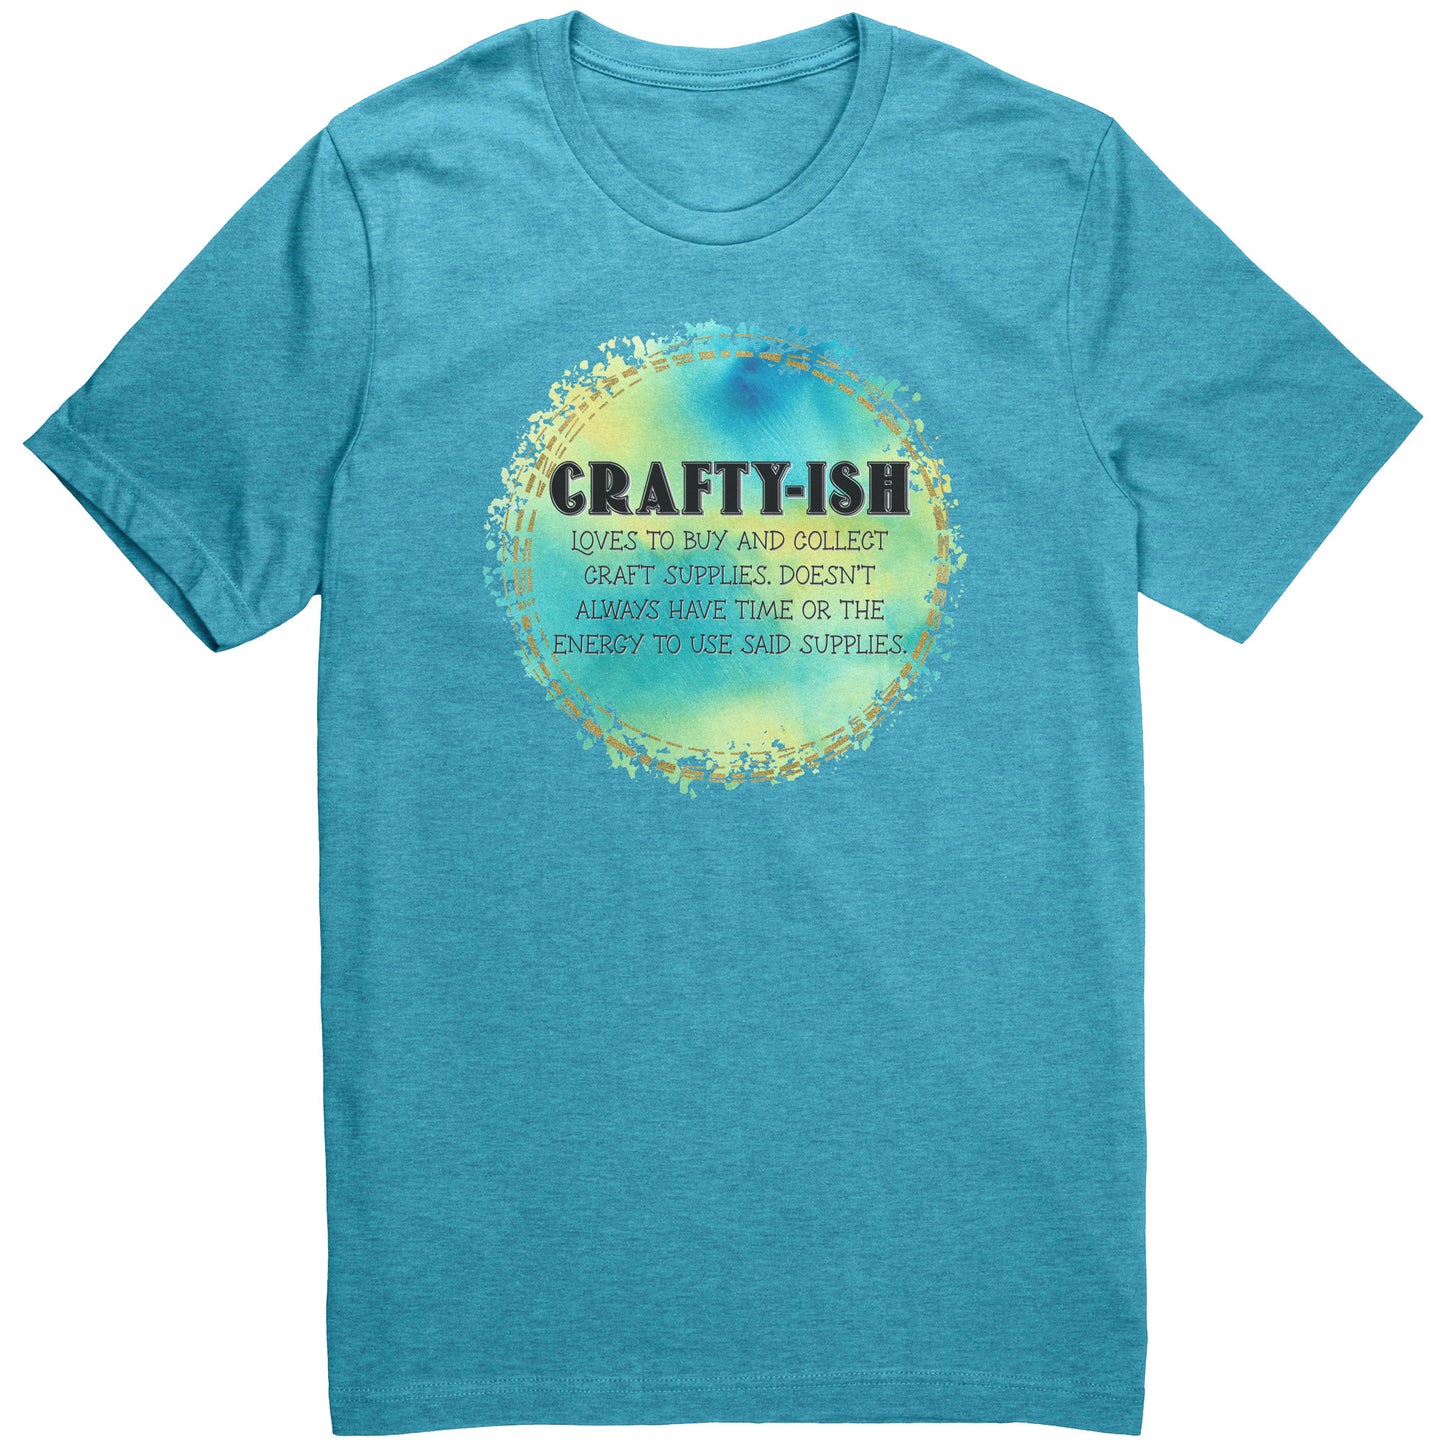 Crafty-ish T-Shirt